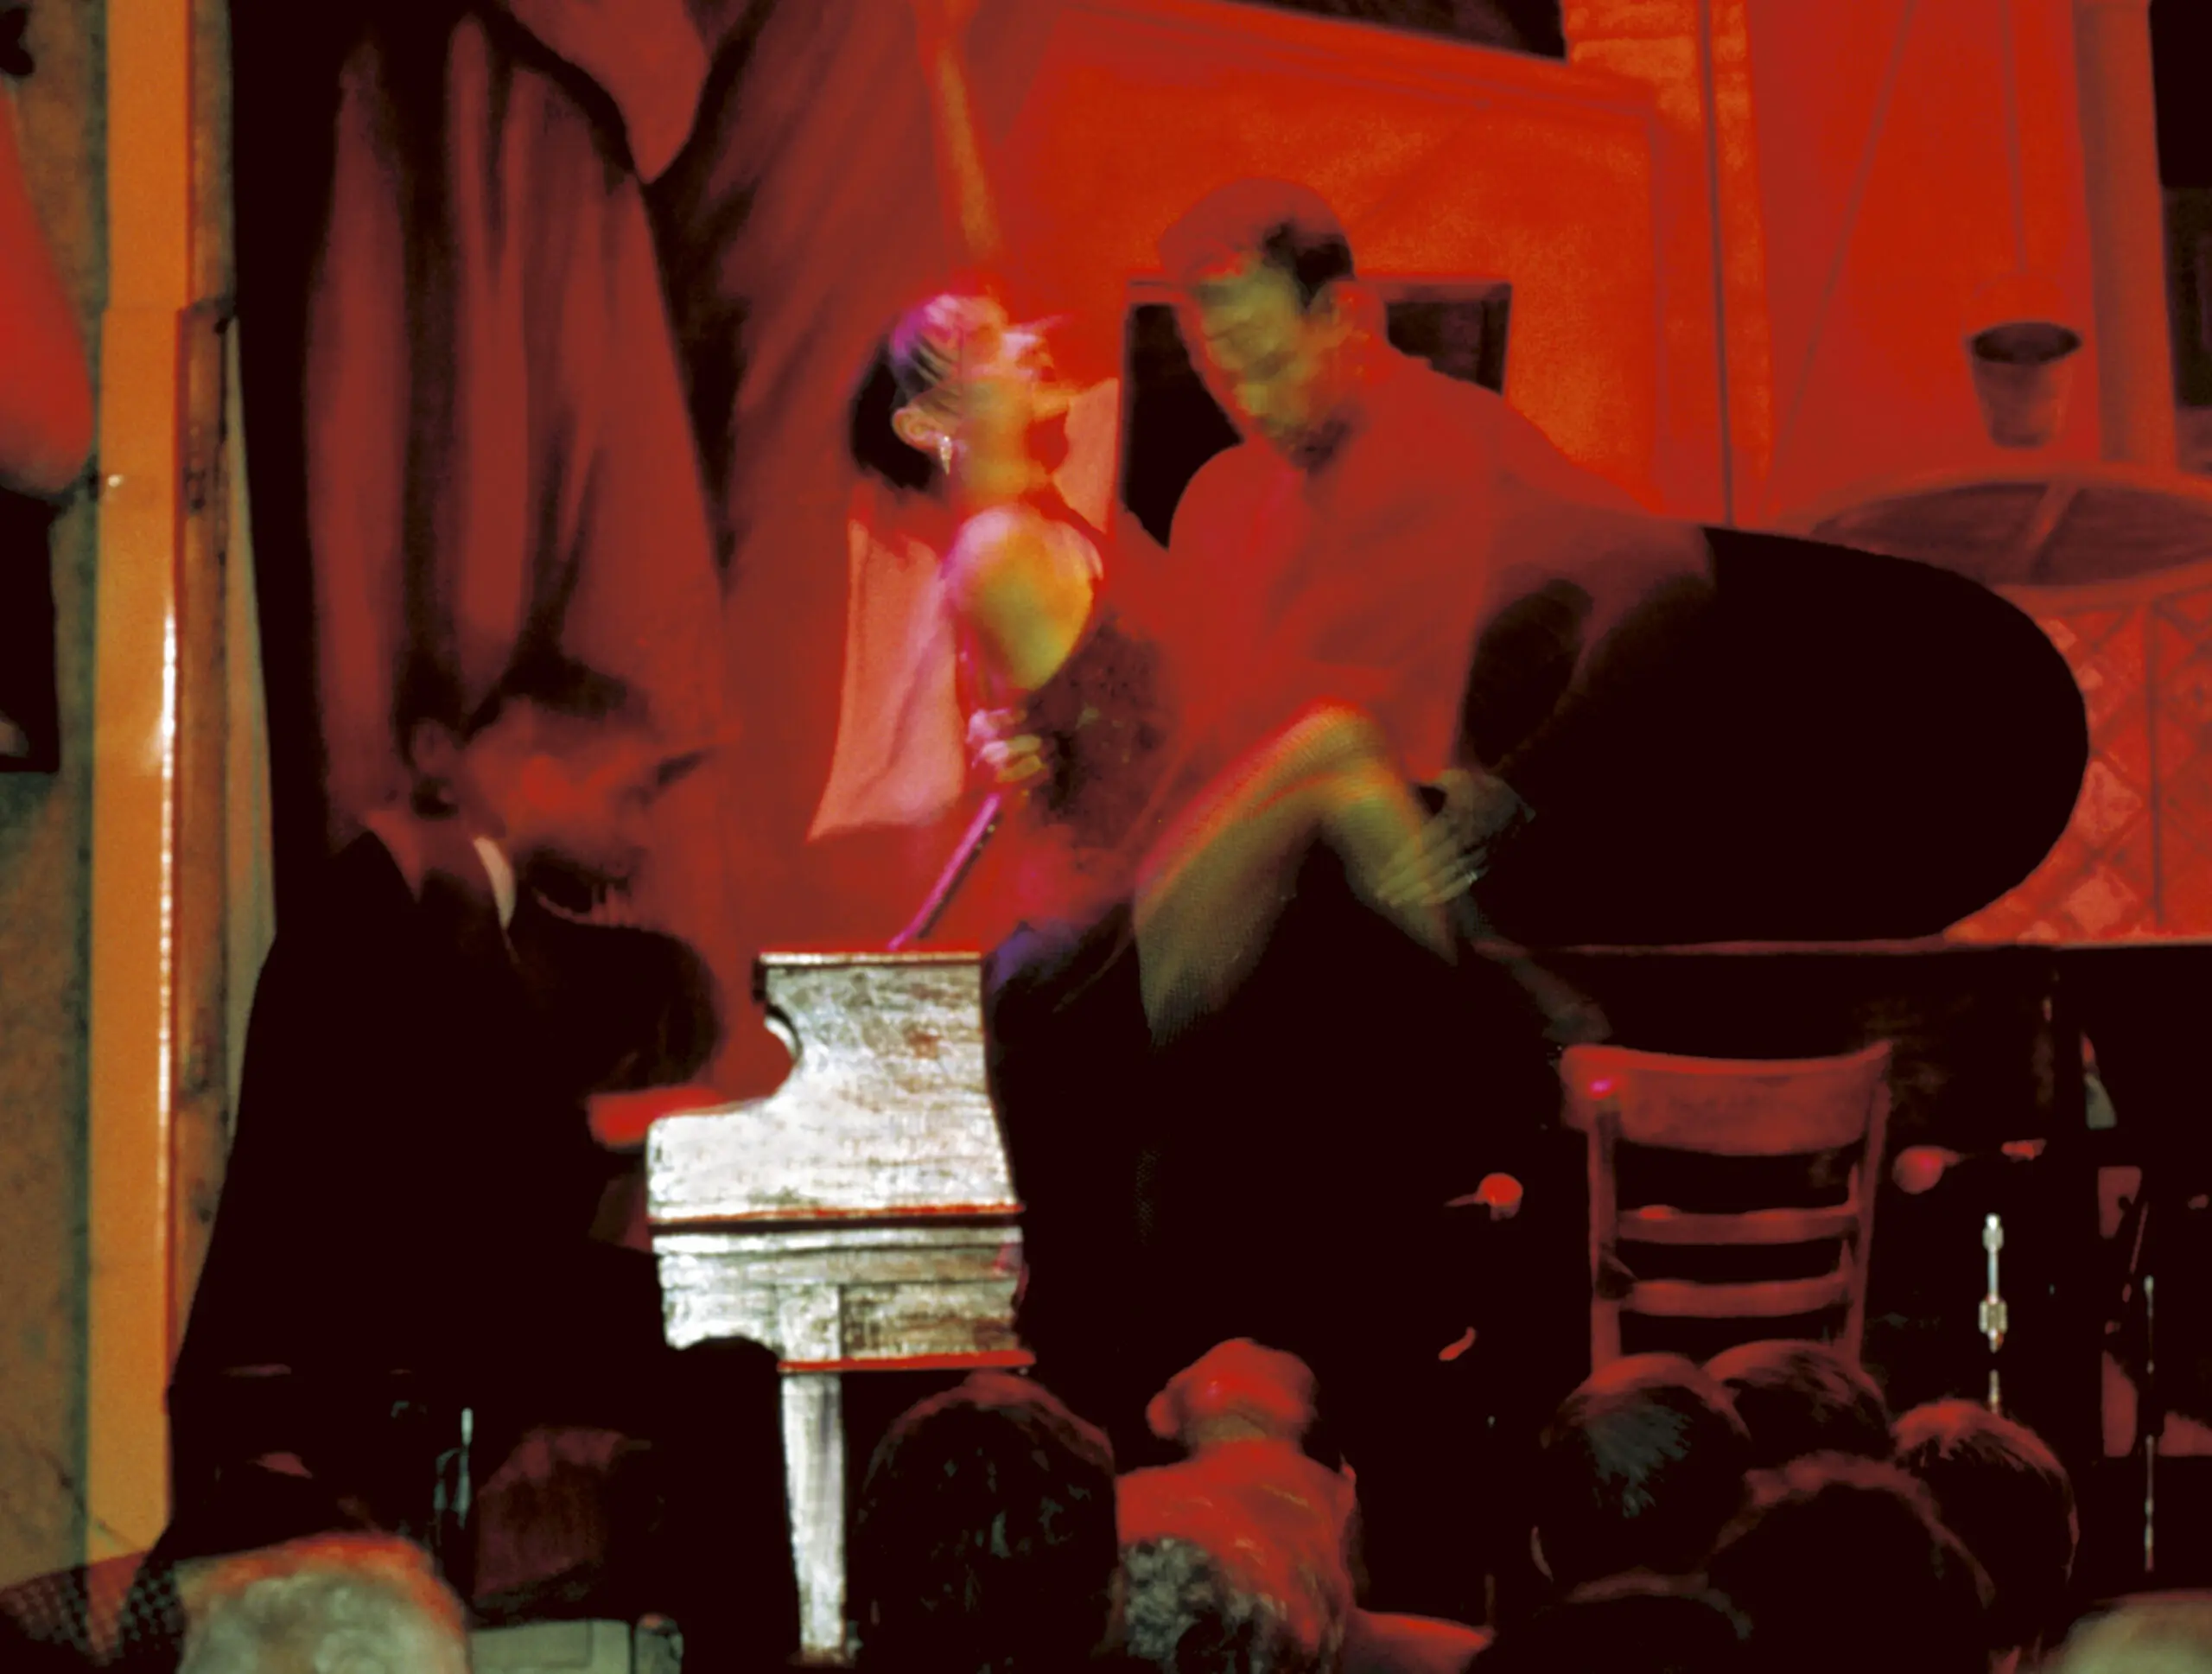 Wandbild (274) Red Tango präsentiert: Aktion-Bewegung,Menschen,Frauen,Männer,Tanzen